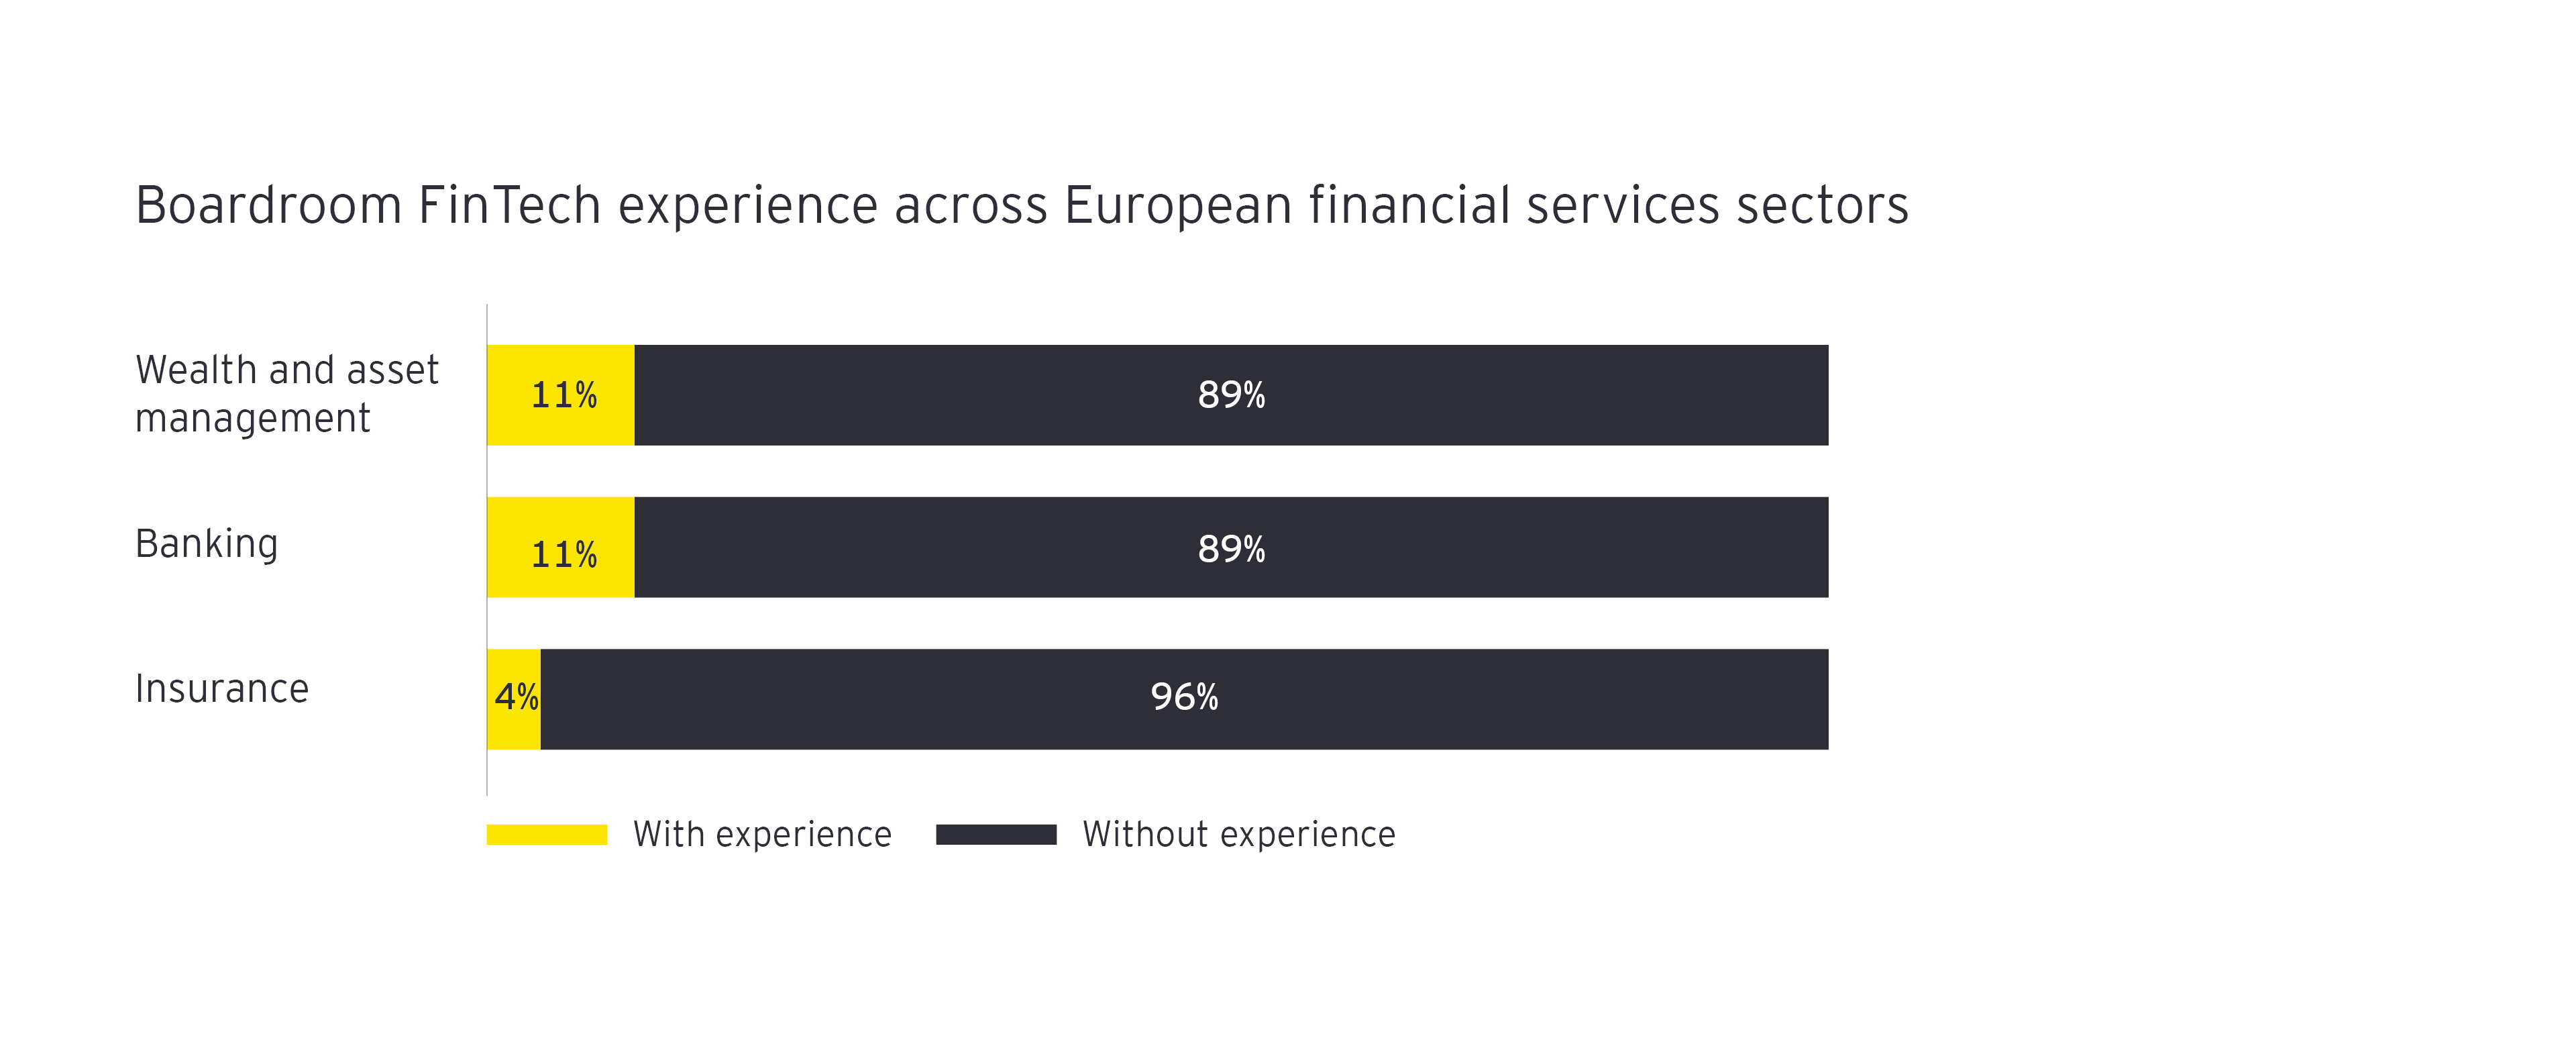 Experiencia de la junta directiva en FinTech en el sector de los servicios financieros europeos